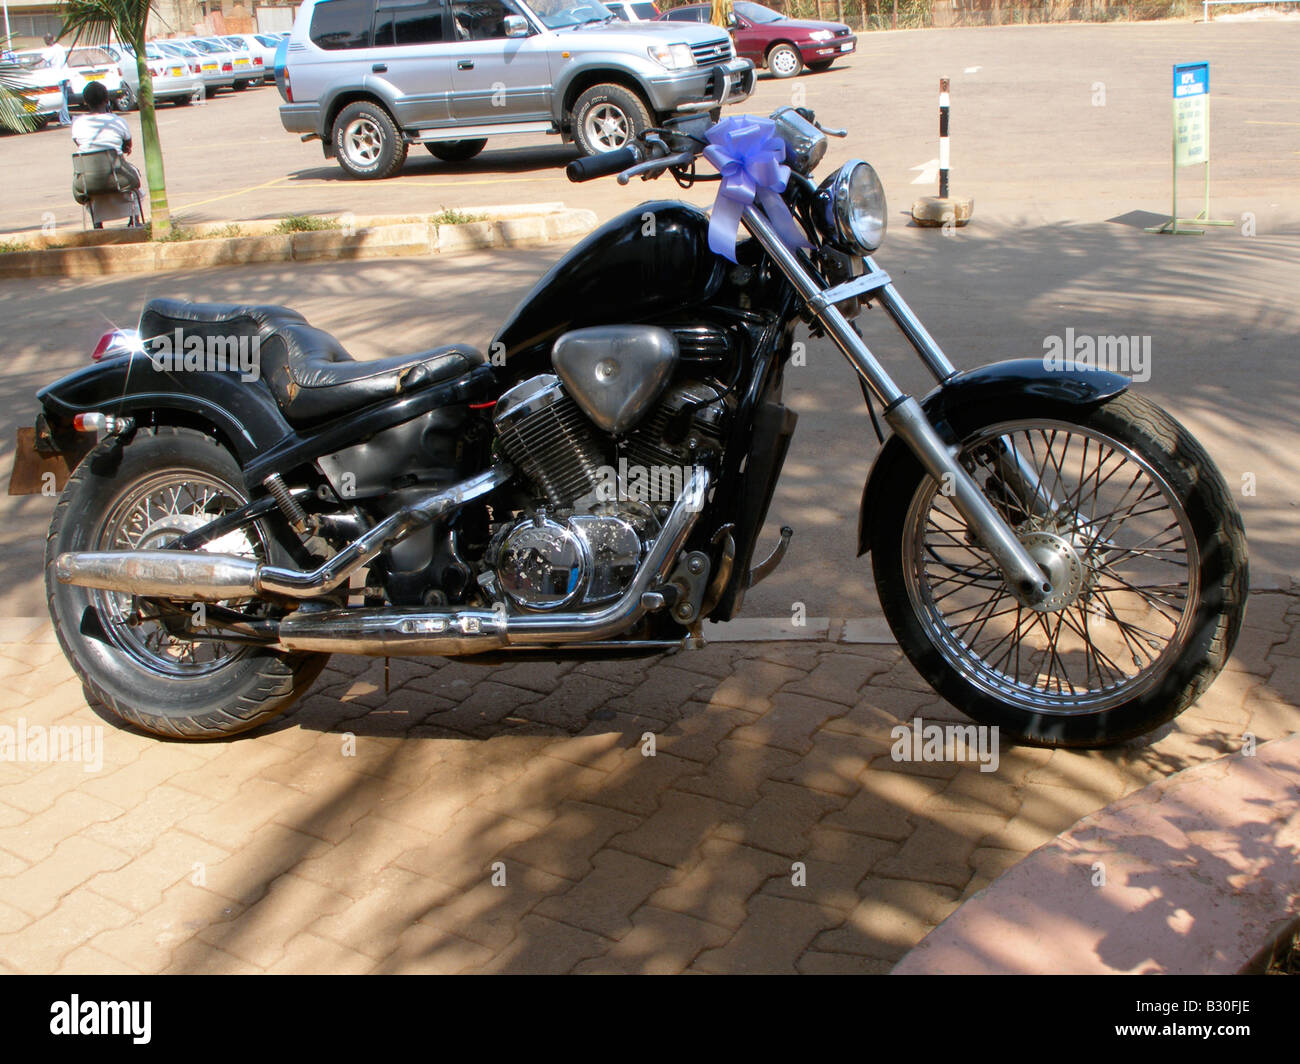 Decorated motorcycle for use in a wedding entourage, Kampala, Uganda Stock Photo